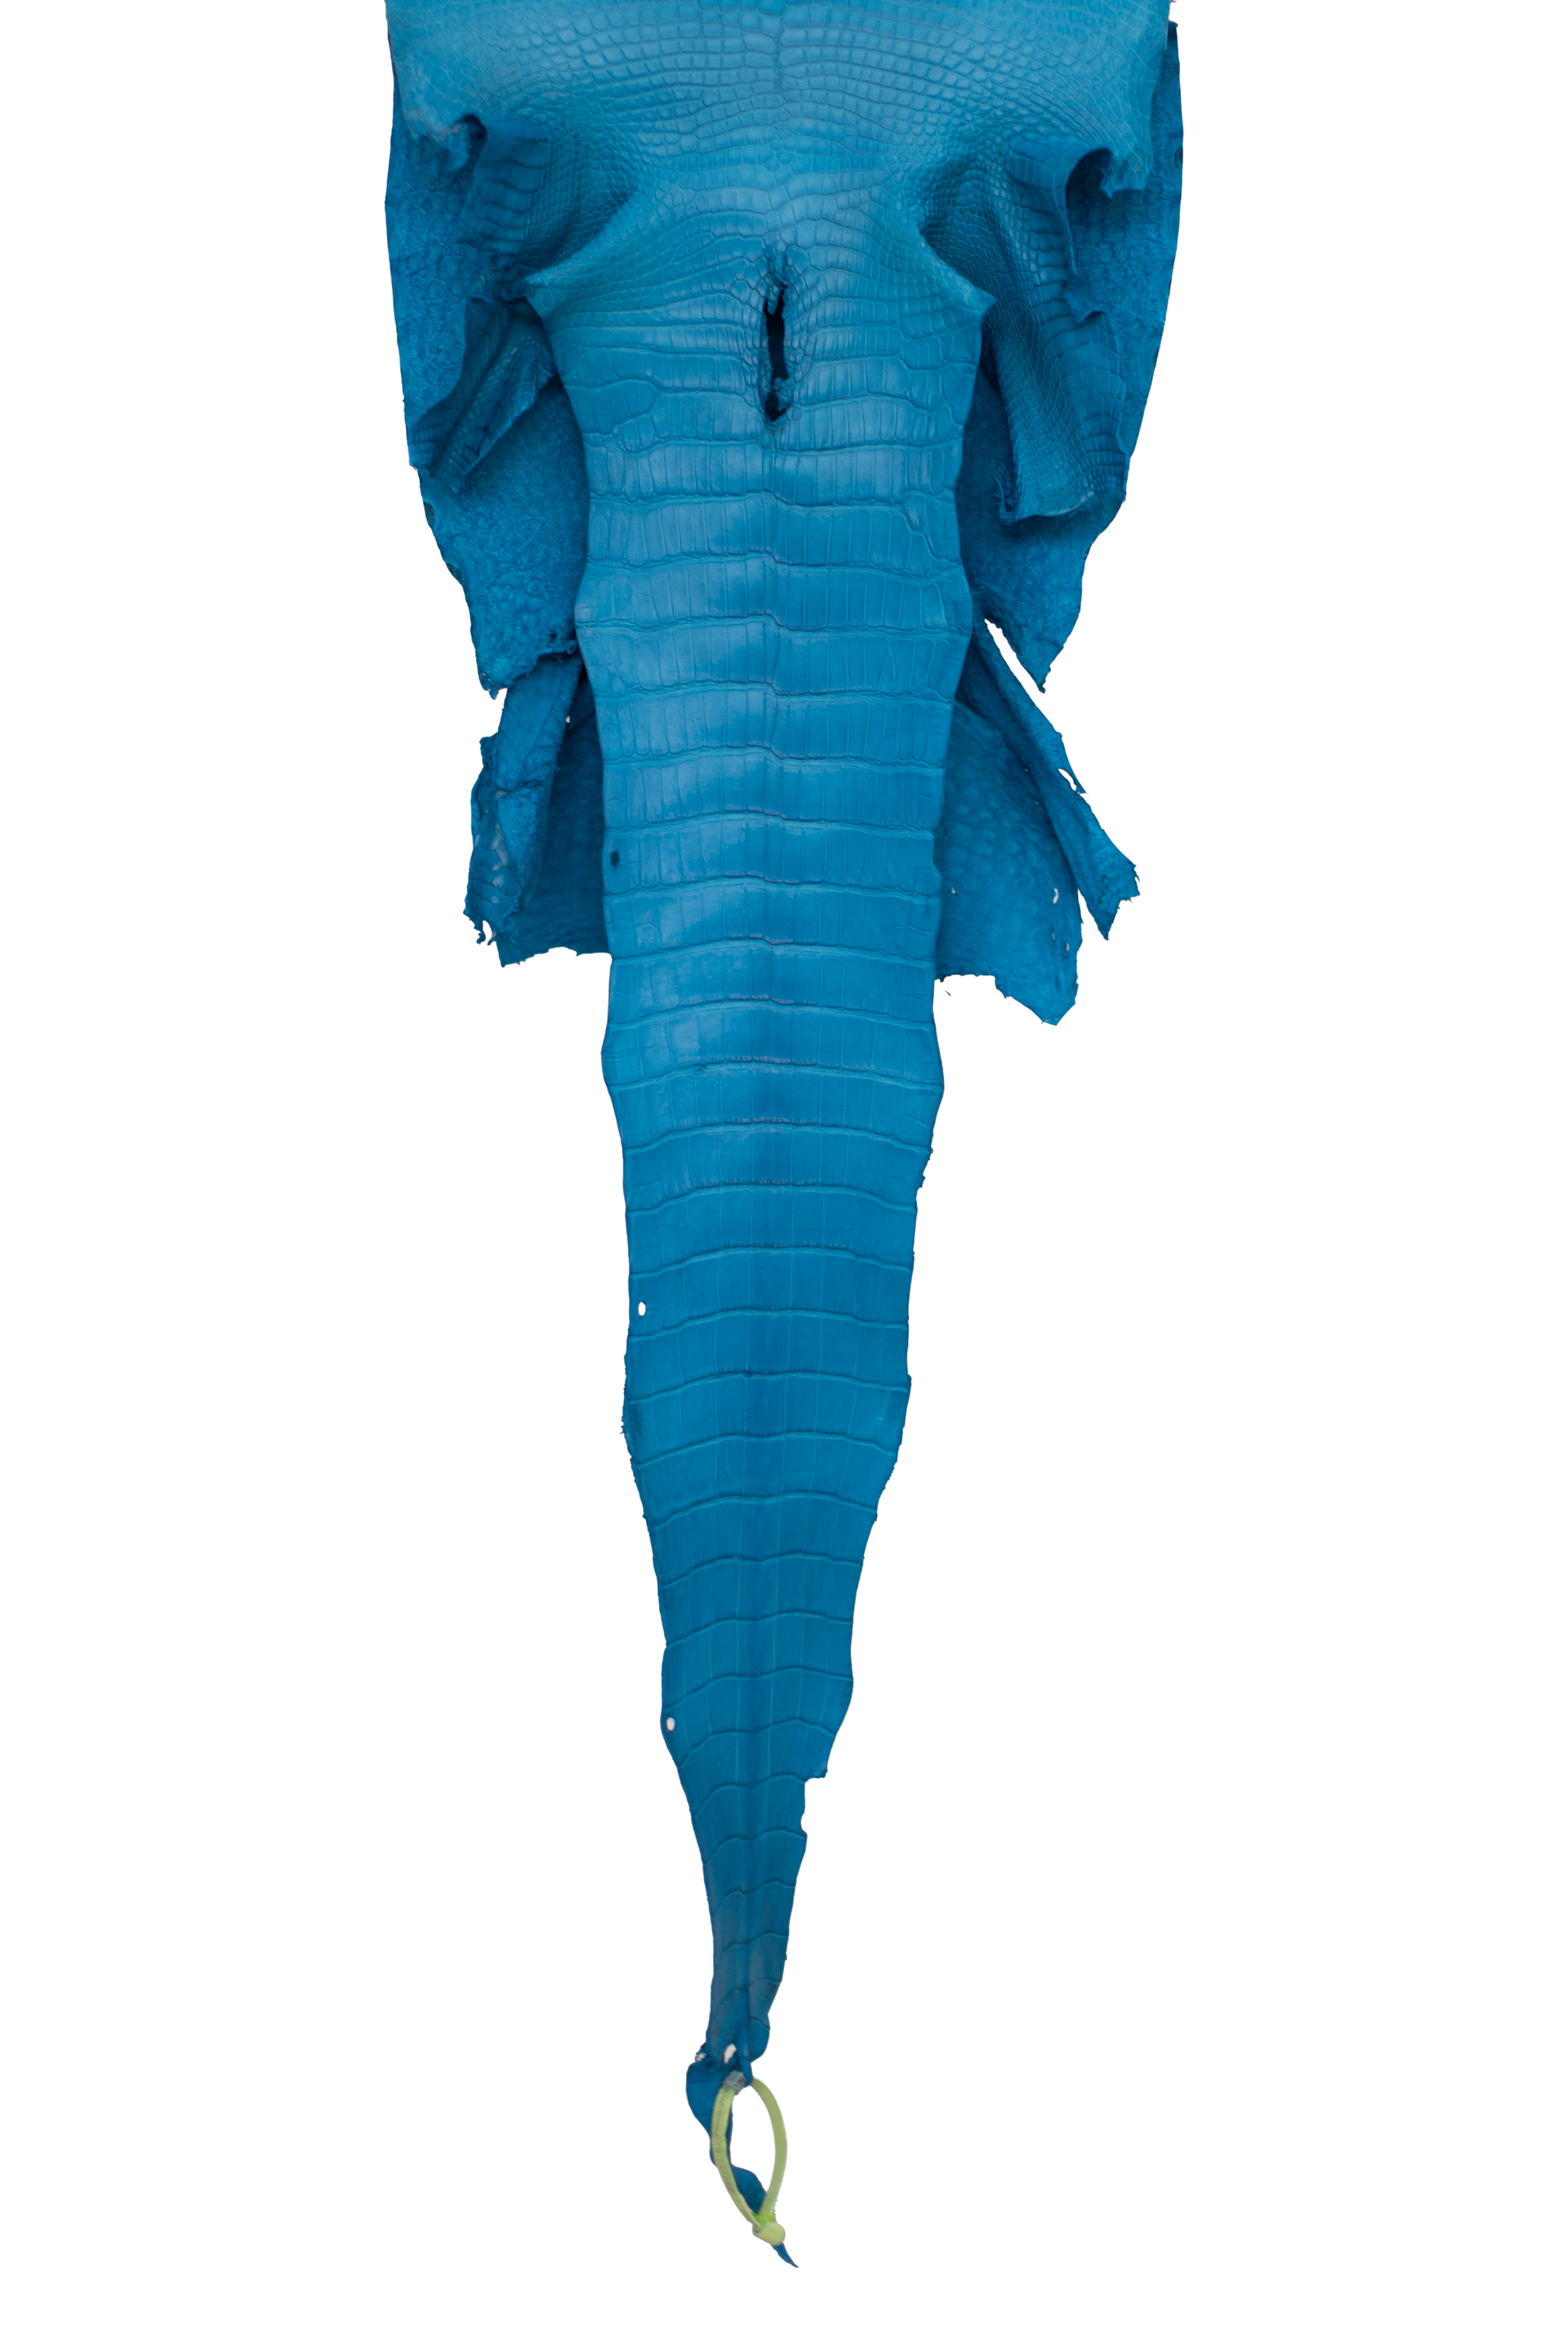 37 cm Grade 1/2 Ultramarine Matte Wild American Alligator Leather - Tag: LA19-0037598